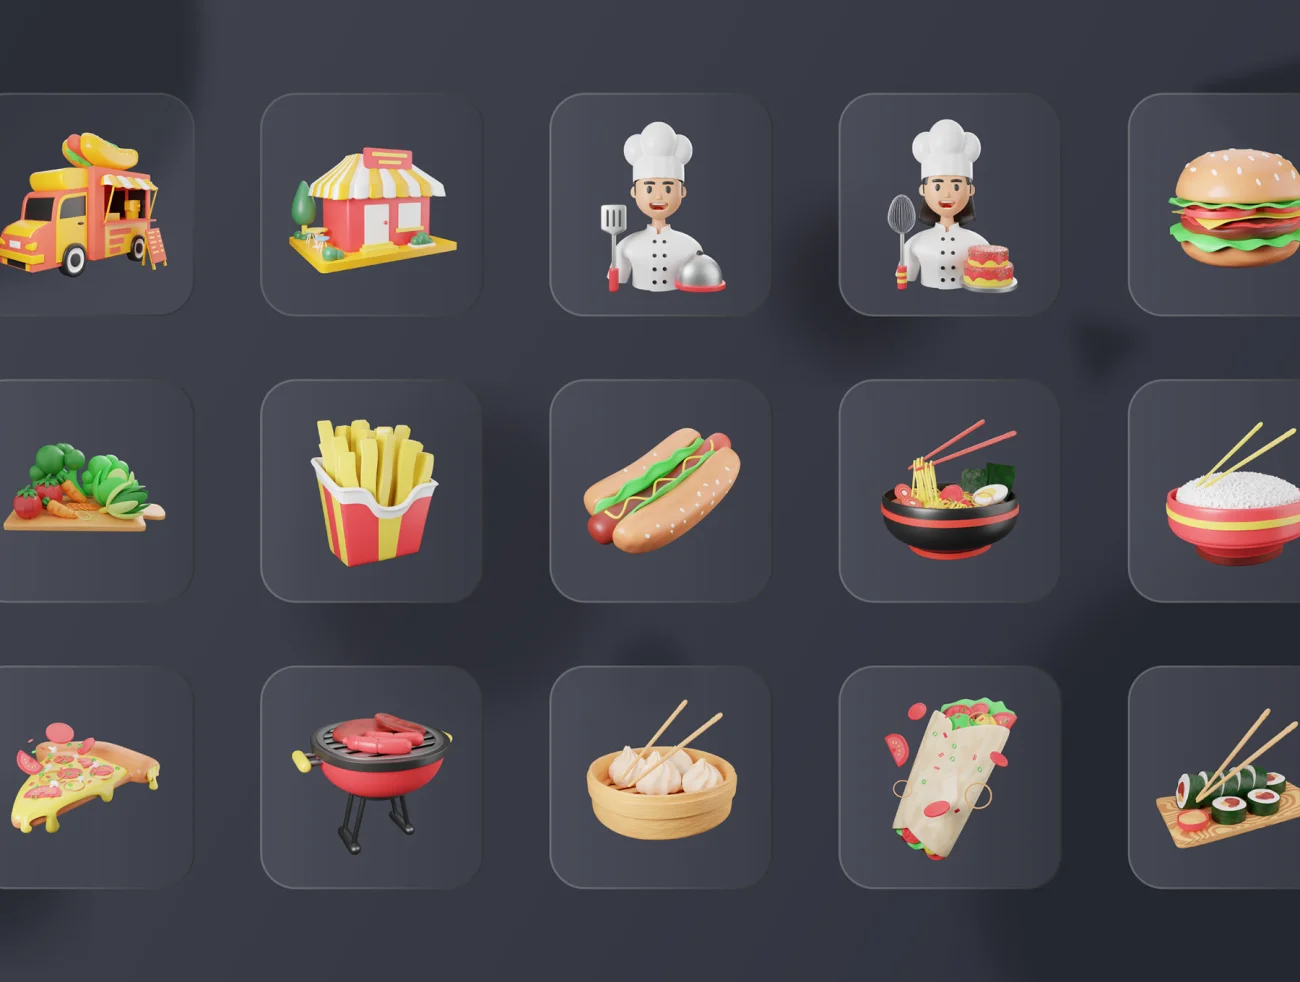 30款快餐日料3d模型图标 30 3D Food & Meals Icons Illustration .blender .figma .psd .png-3D/图标-到位啦UI